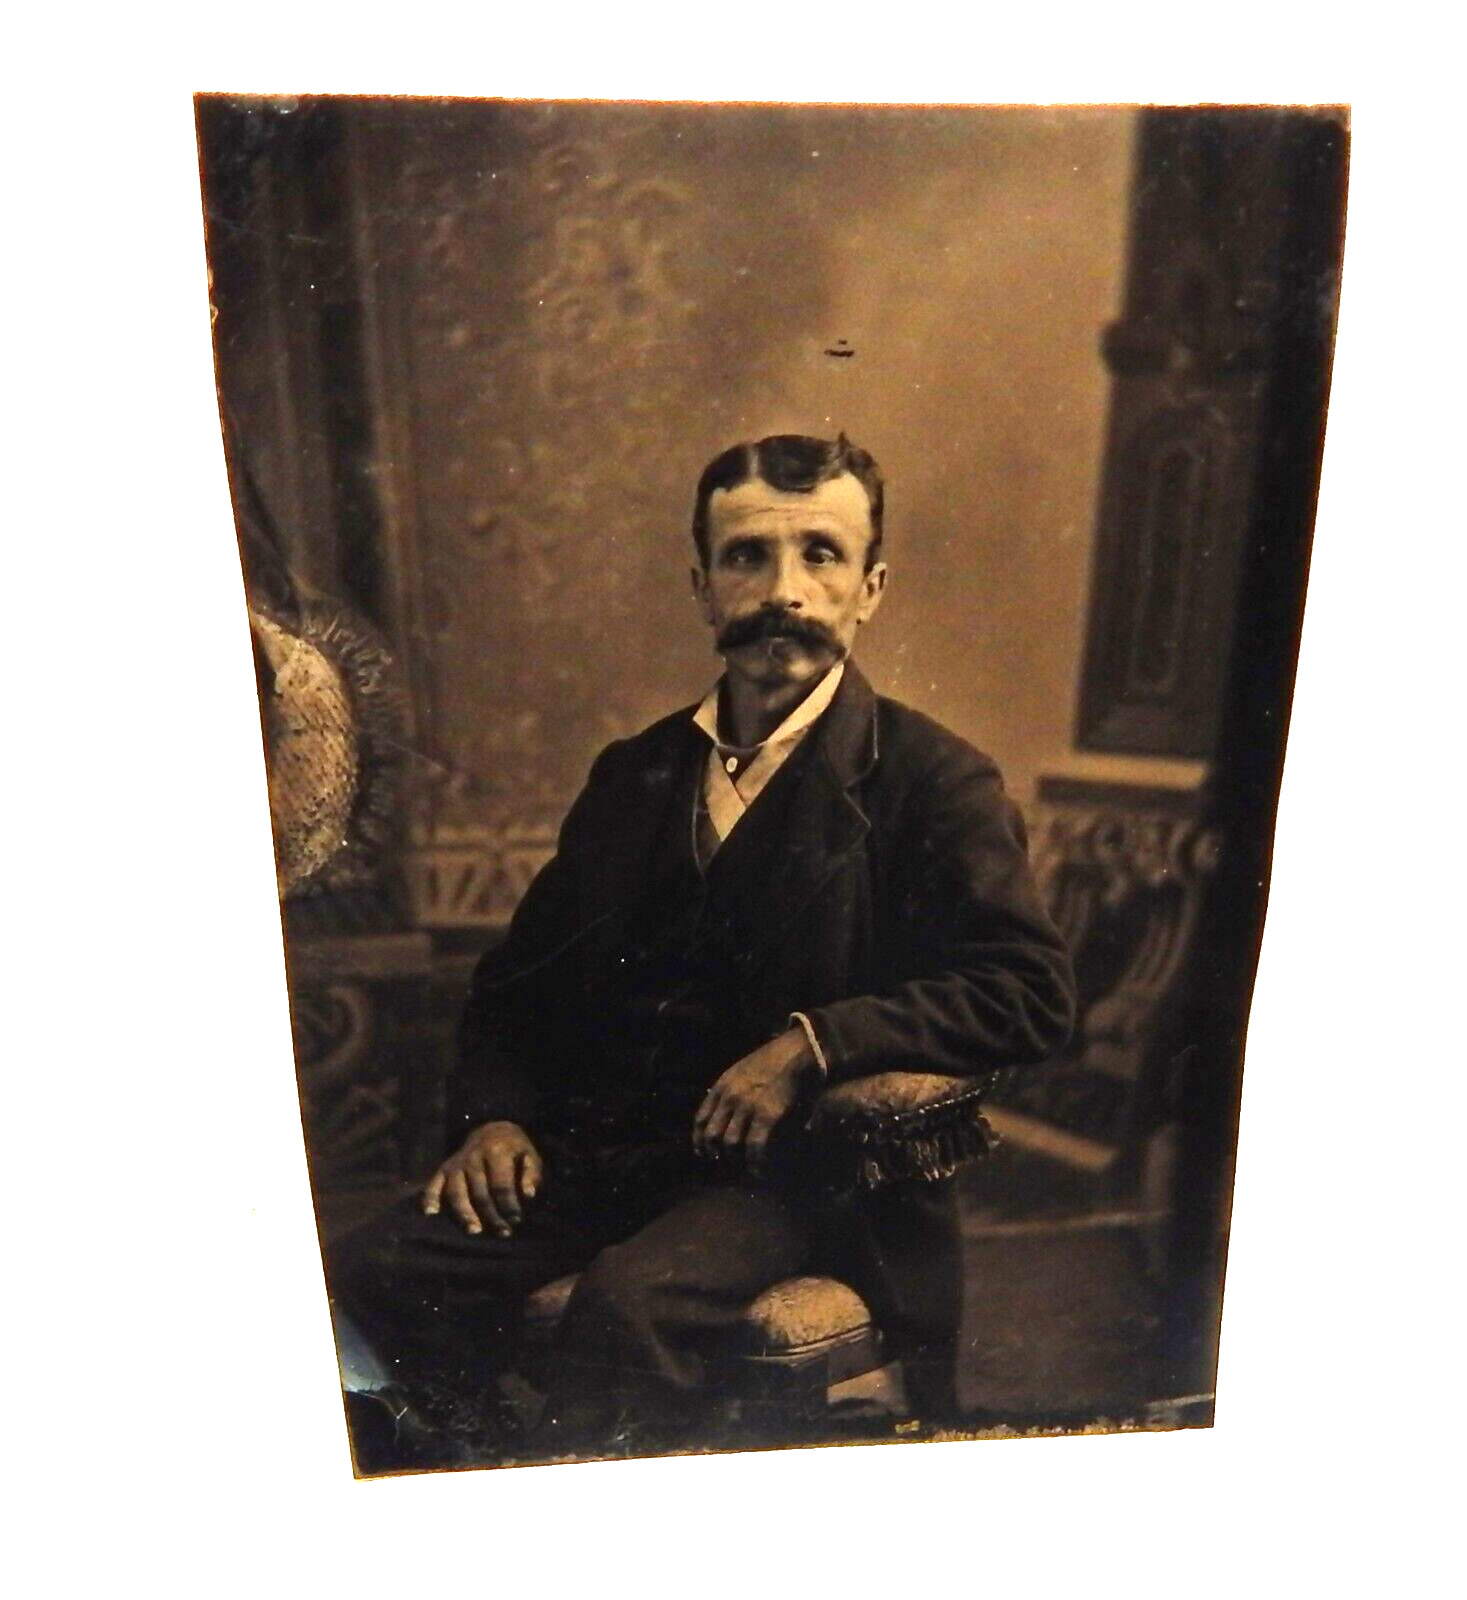 Antique Civil War Era Tin Type Photograph - Man Wearing Medal?